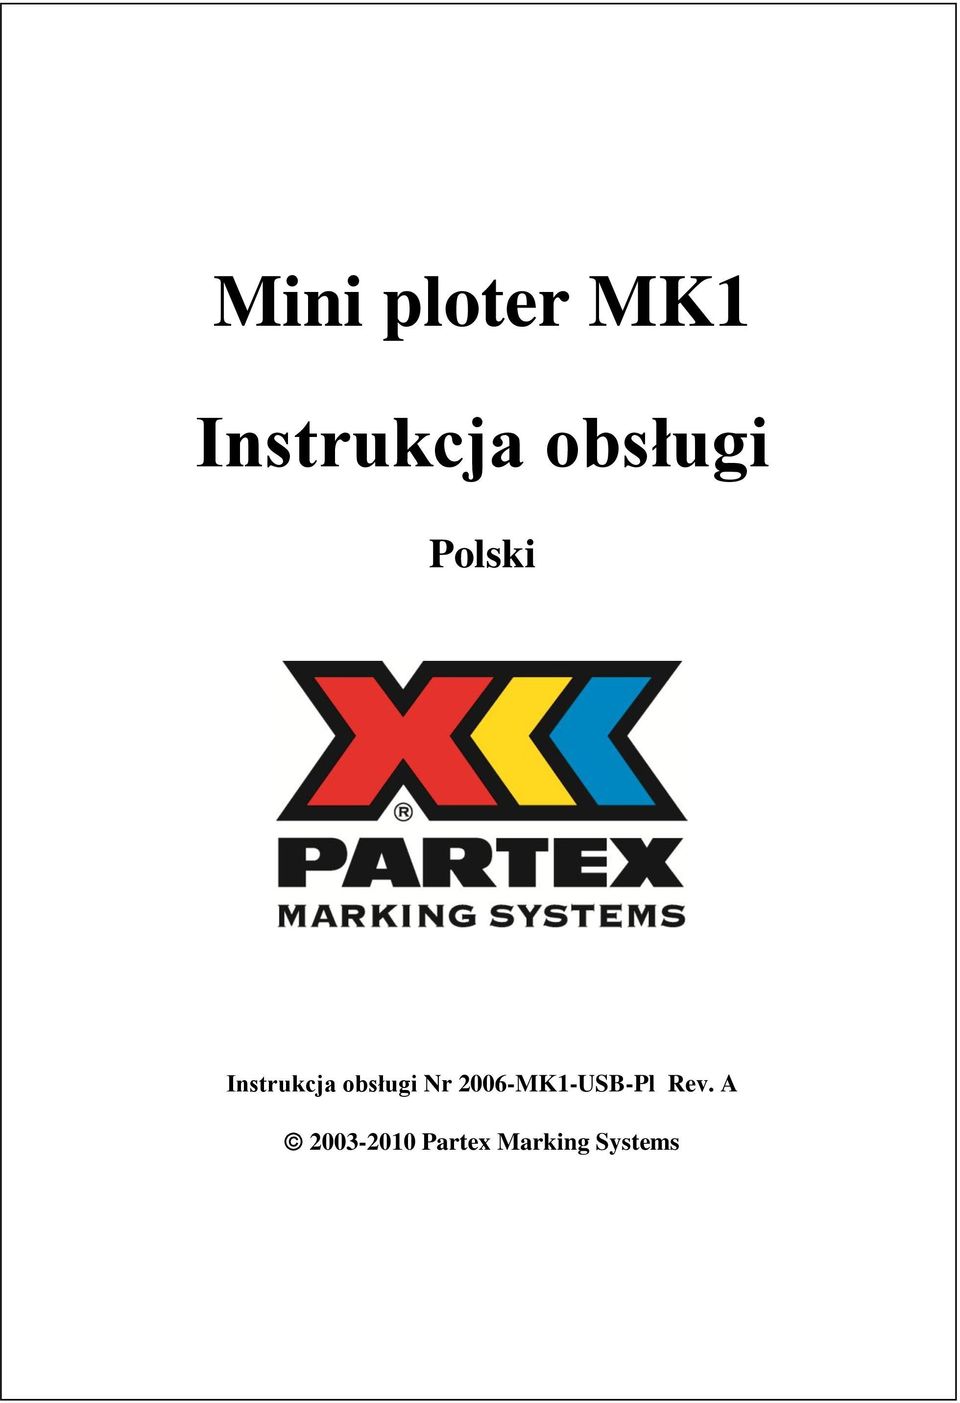 obsługi Nr 2006-MK1-USB-Pl